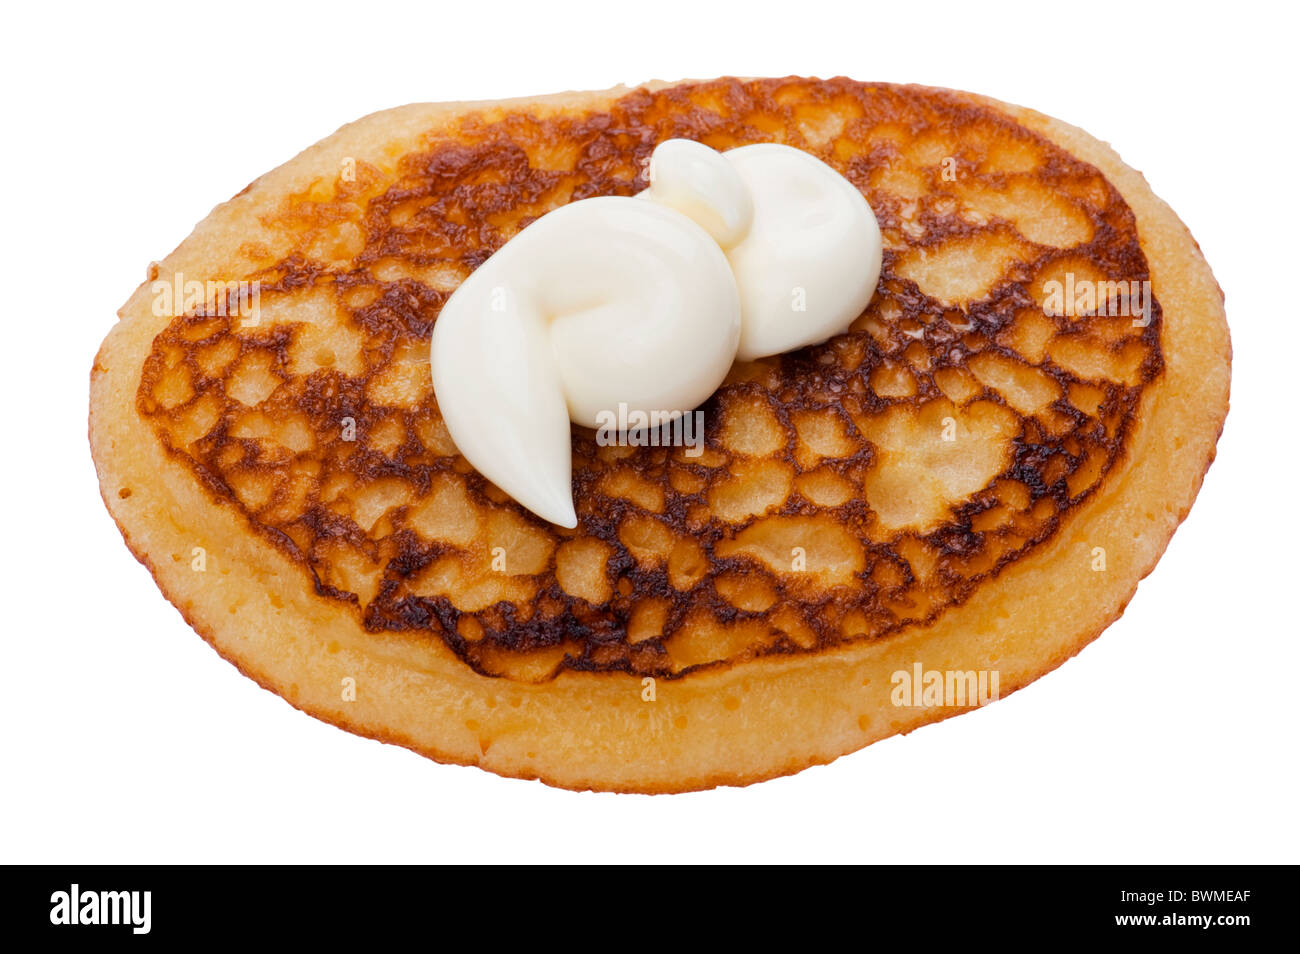 Objekt auf weiß - Nahaufnahme essen Pfannkuchen mit saurer Sahne Stockfoto